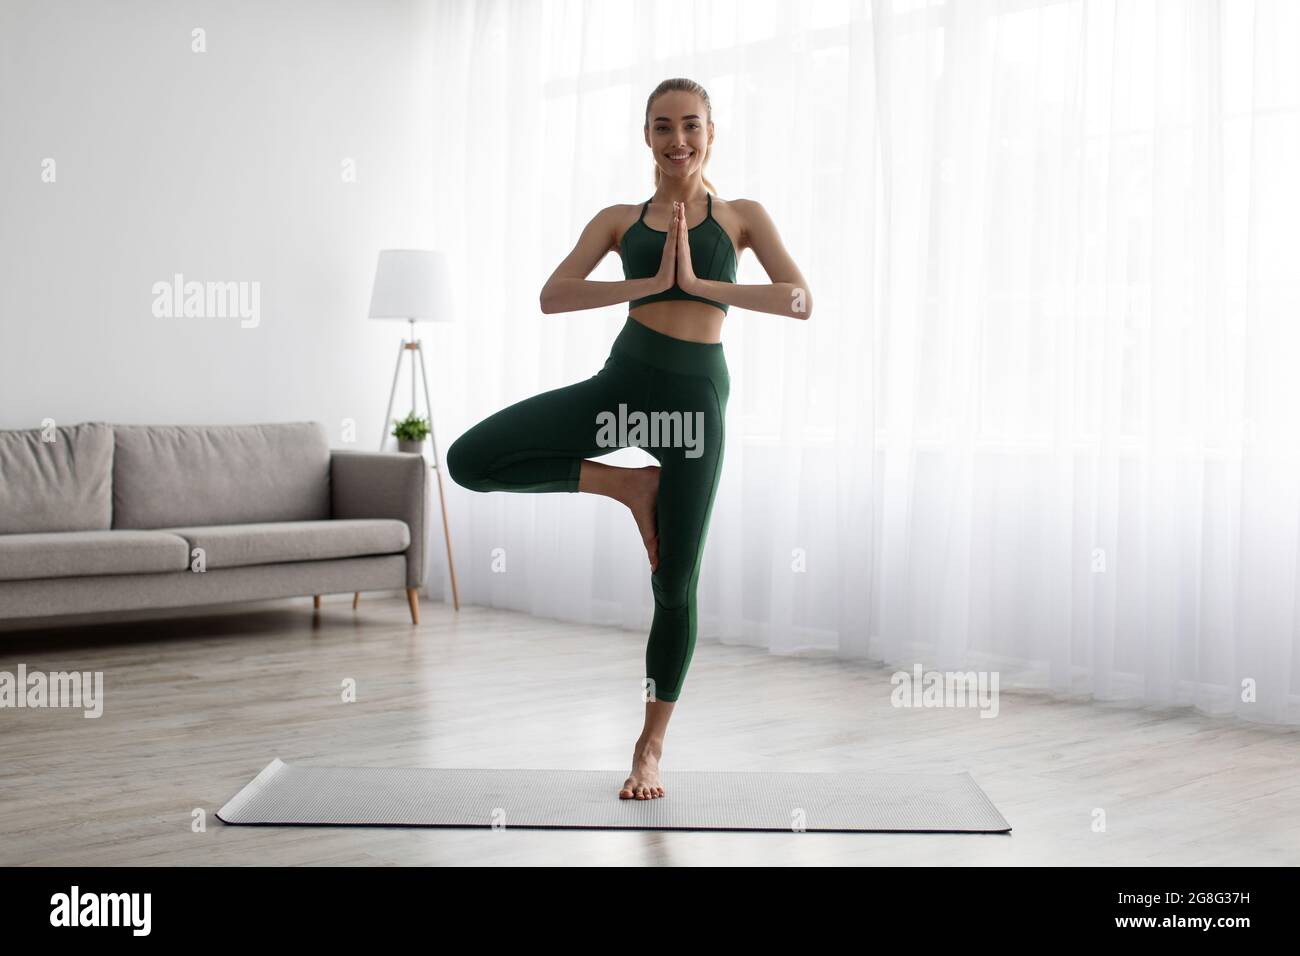 Ruhige junge Frau, die Yoga praktiziert, Übungen im Wohnzimmer, gesunder Lebensstil Stockfoto